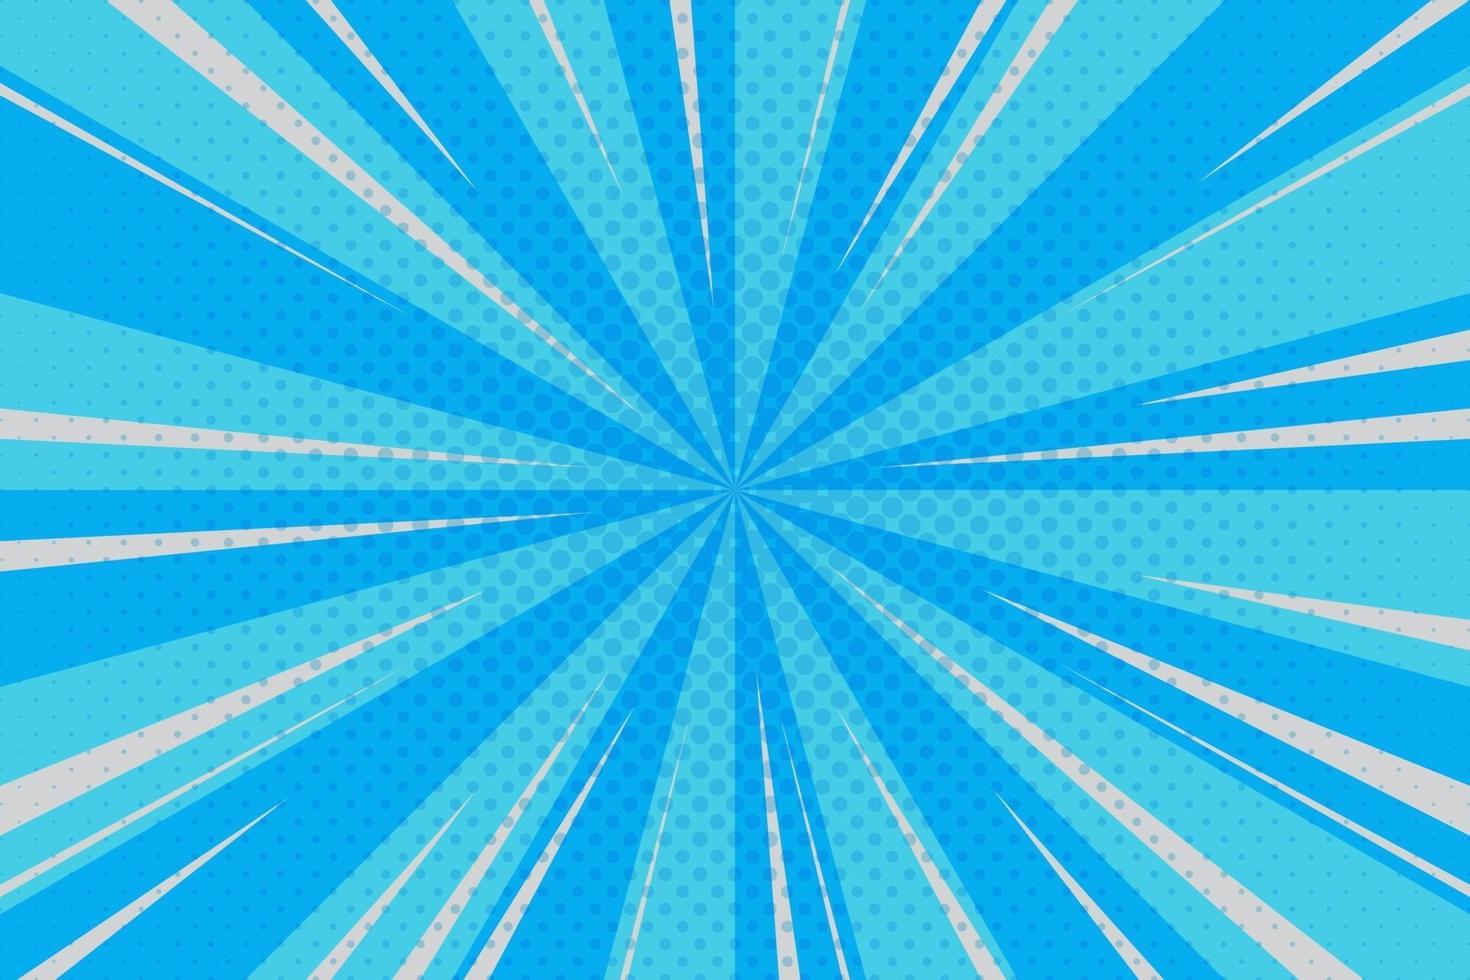 ciano, raios azuis fundo pop art retro ilustração vetorial desenho kitsch vetor